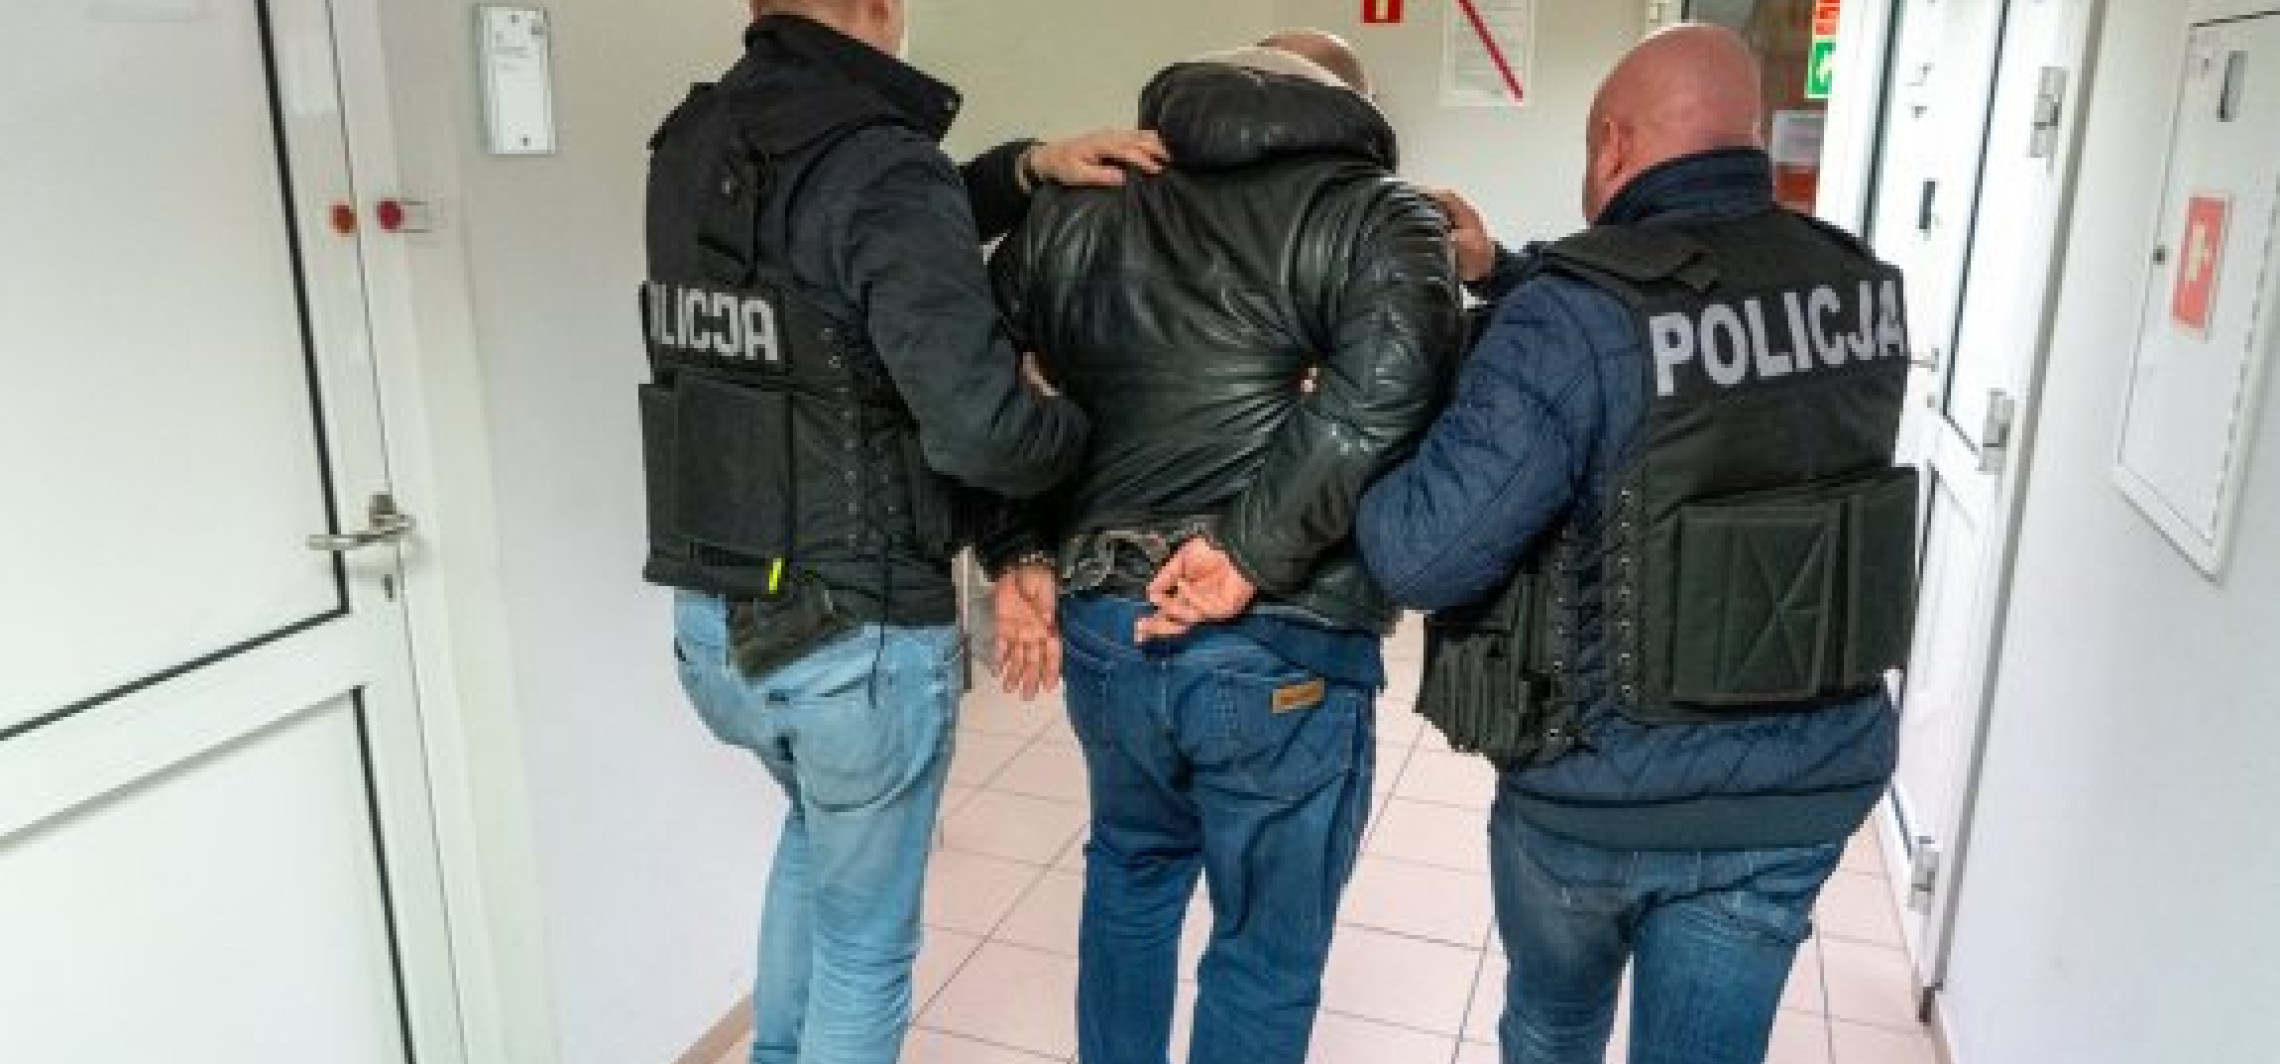 Inowrocław - Policja zatrzymała sześć poszukiwanych osób